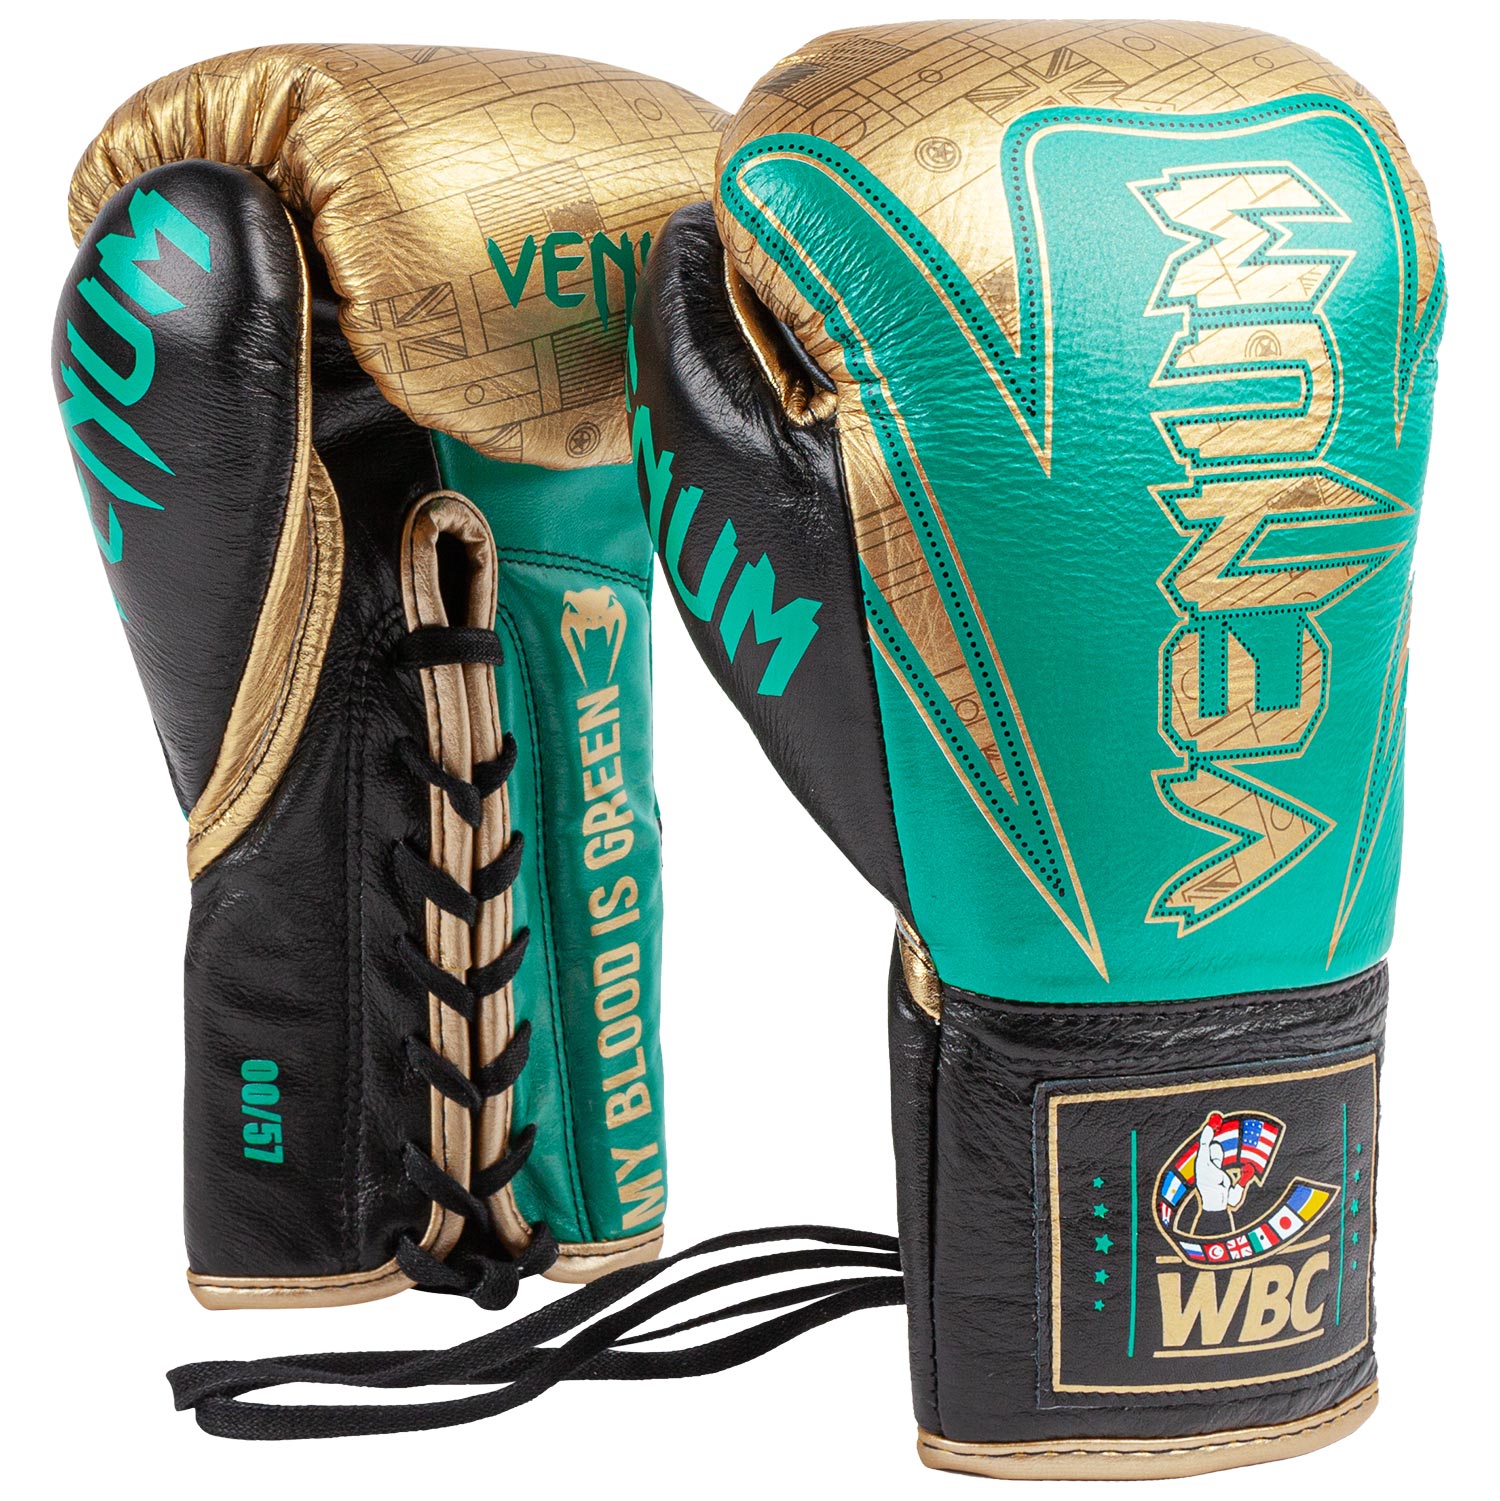 Venum HAMMER professionelle Boxhandschuhe - WBC limitierte Auflage - M –  Venum Schweiz